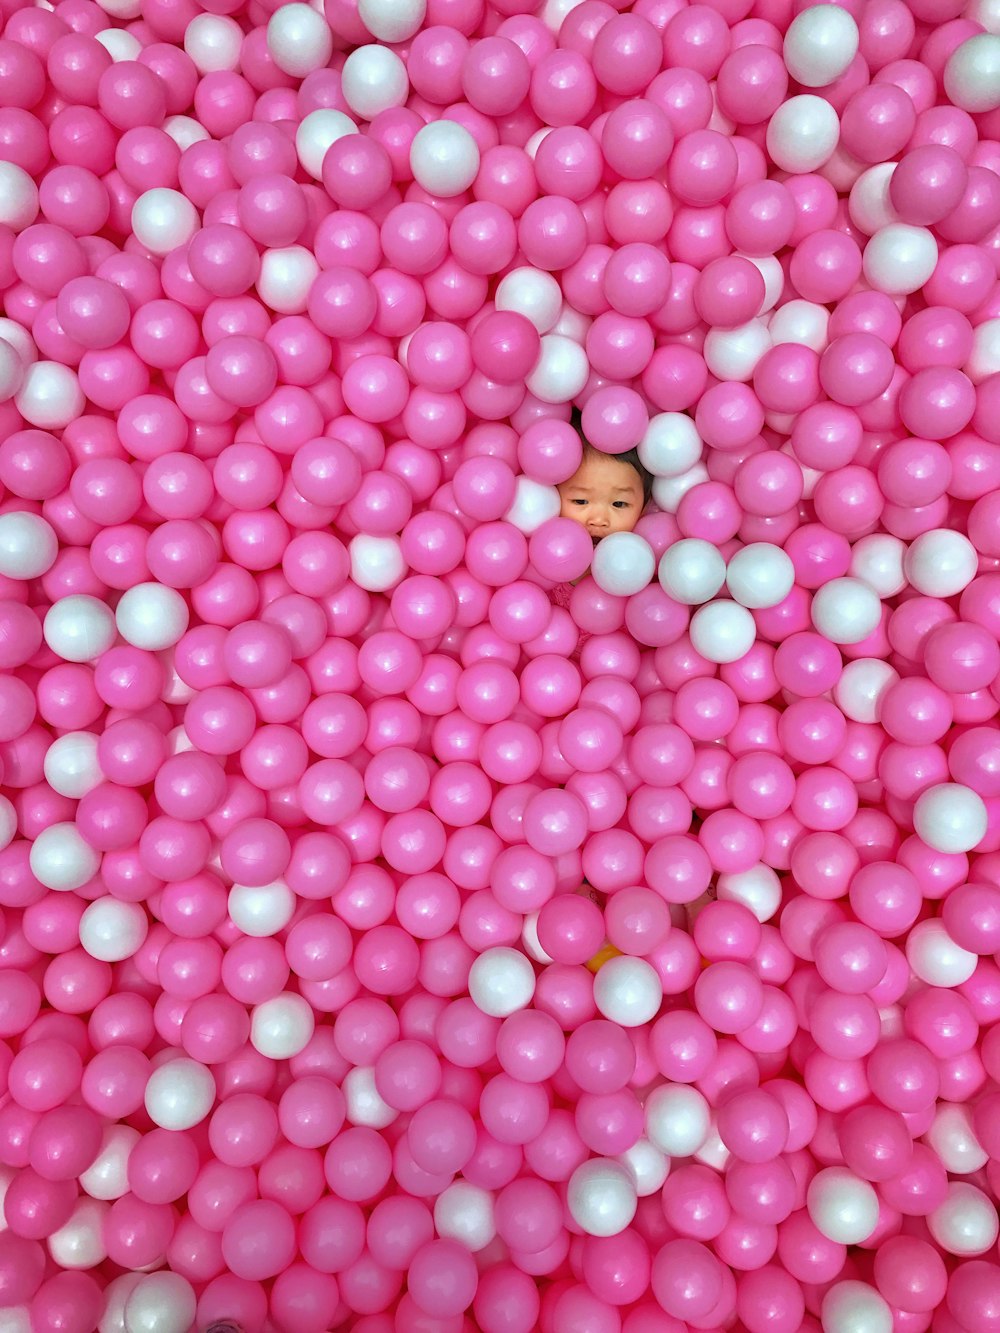 bambino su pallina rosa e bianca